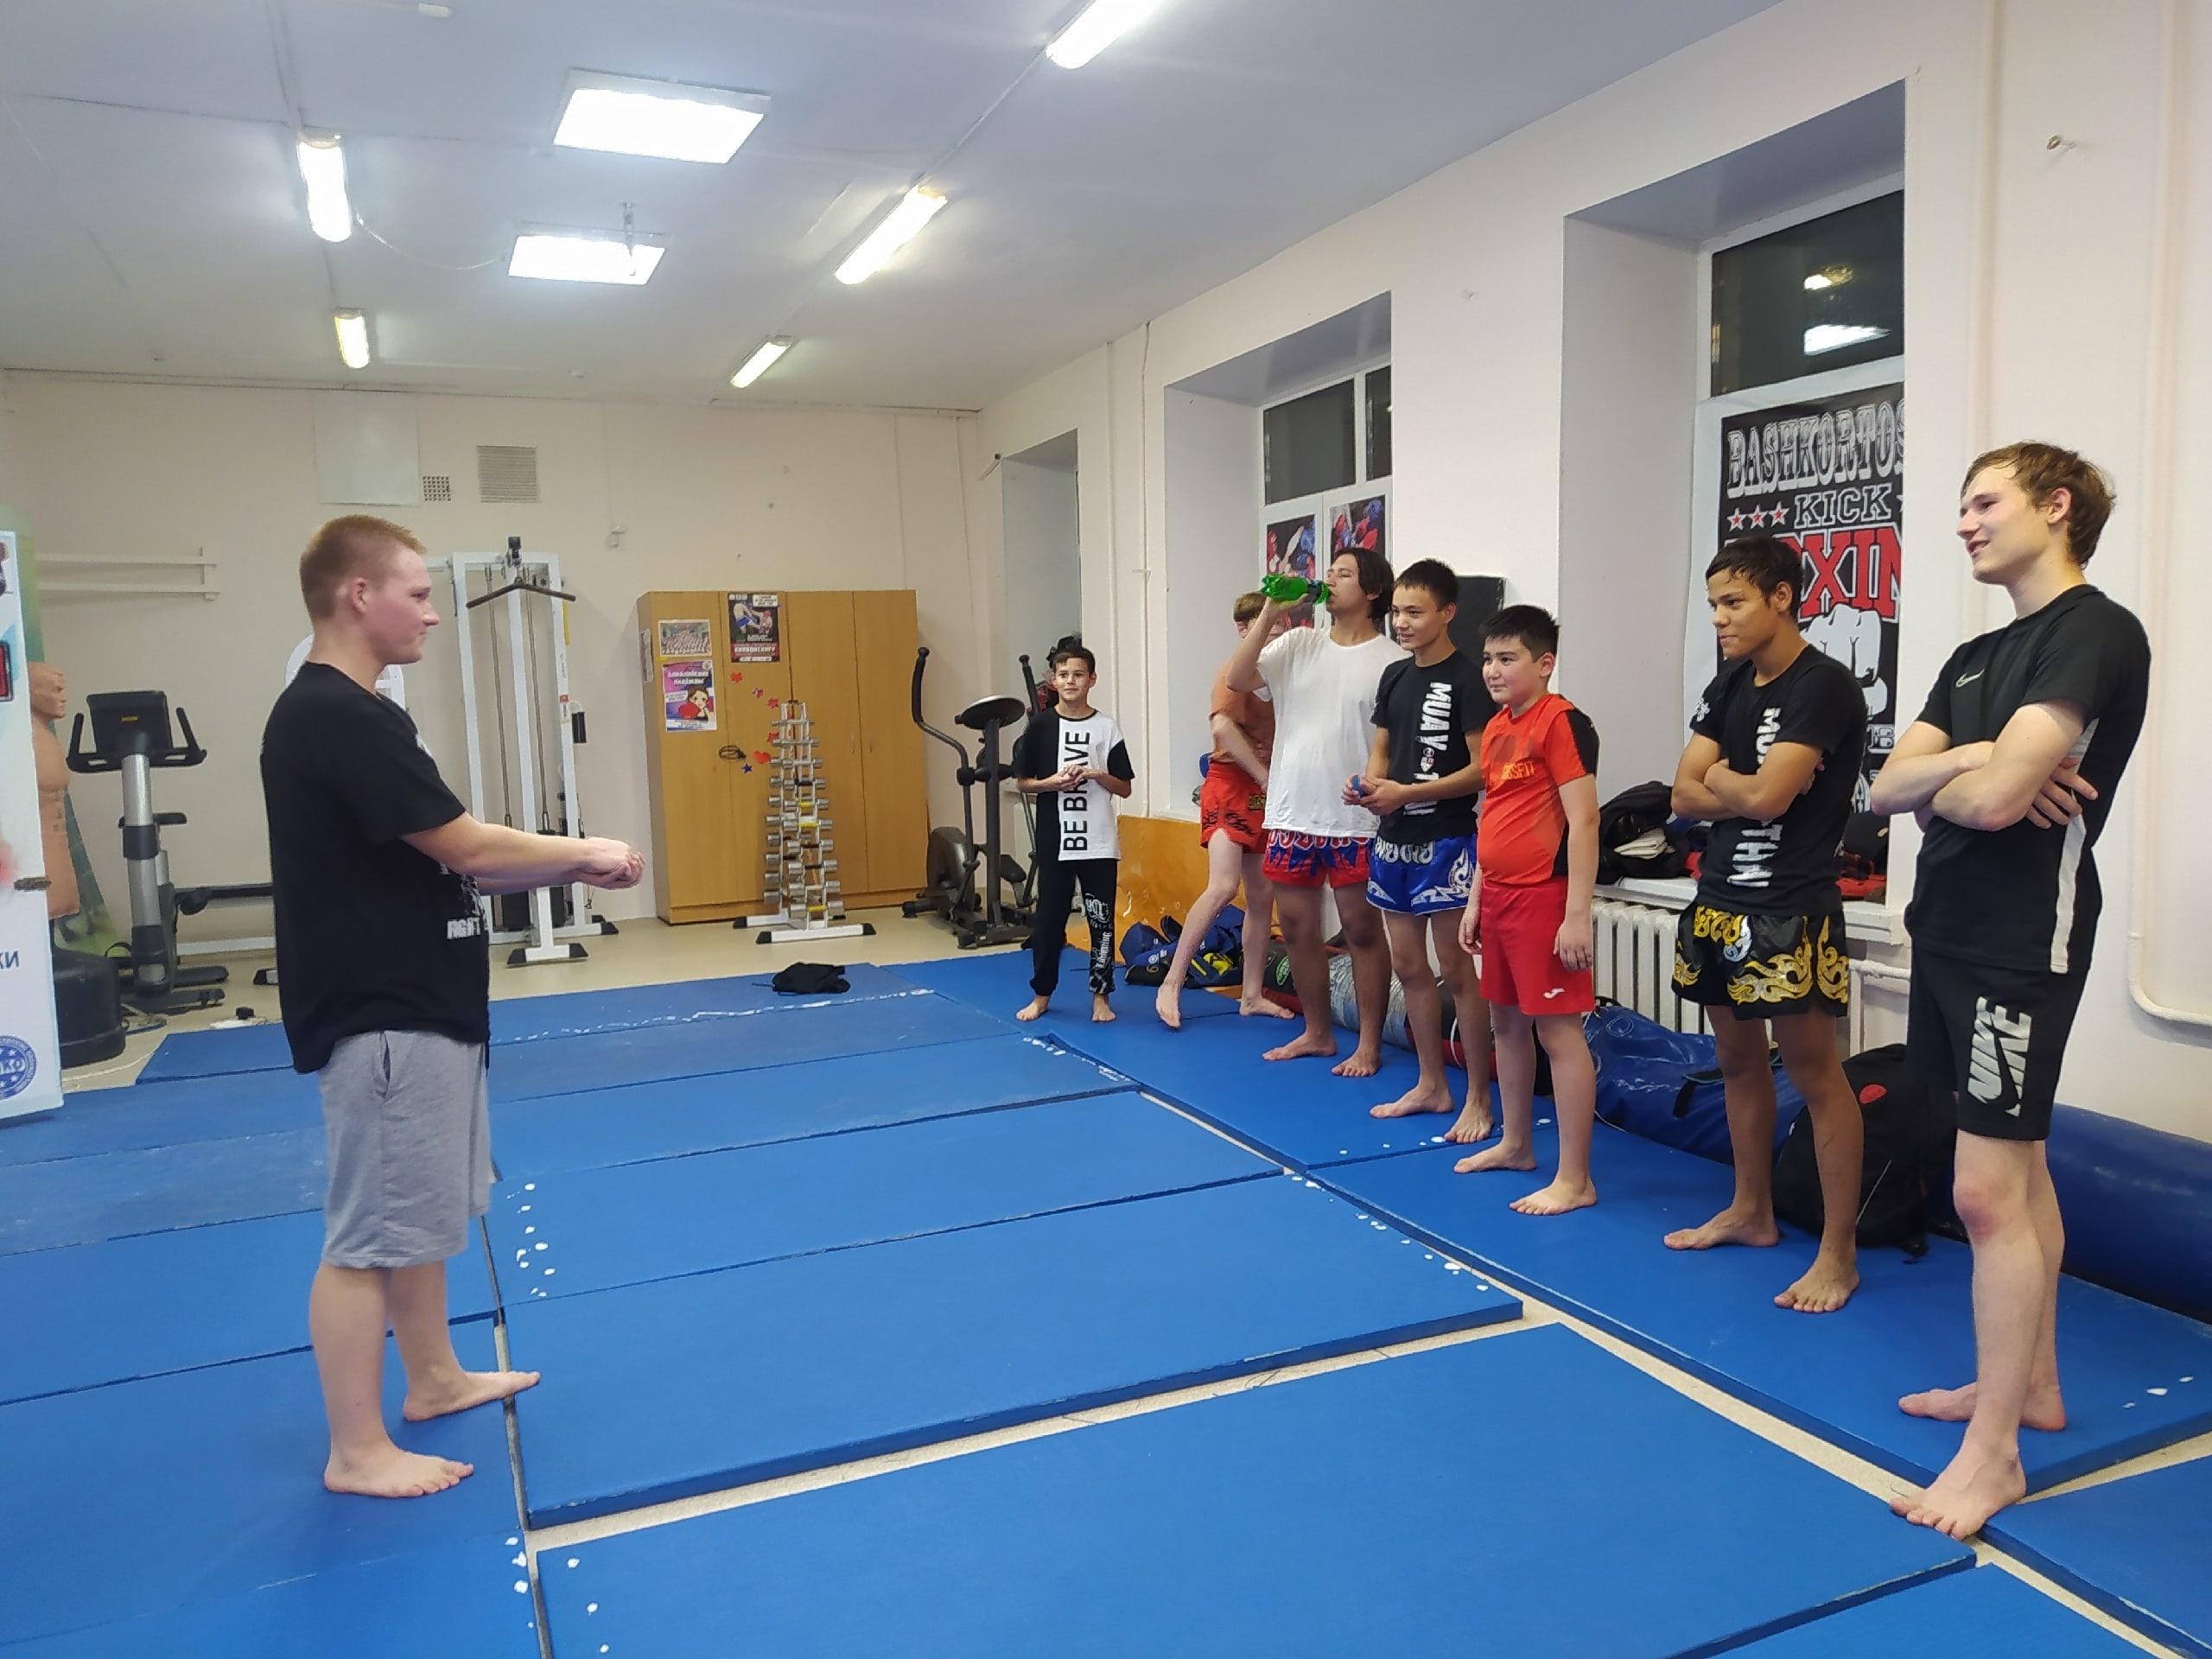 Сегодня спортсмены секции тайский бокс приняли активное участие в творческой игре "Активити" по мотивам игры "Крокодил"